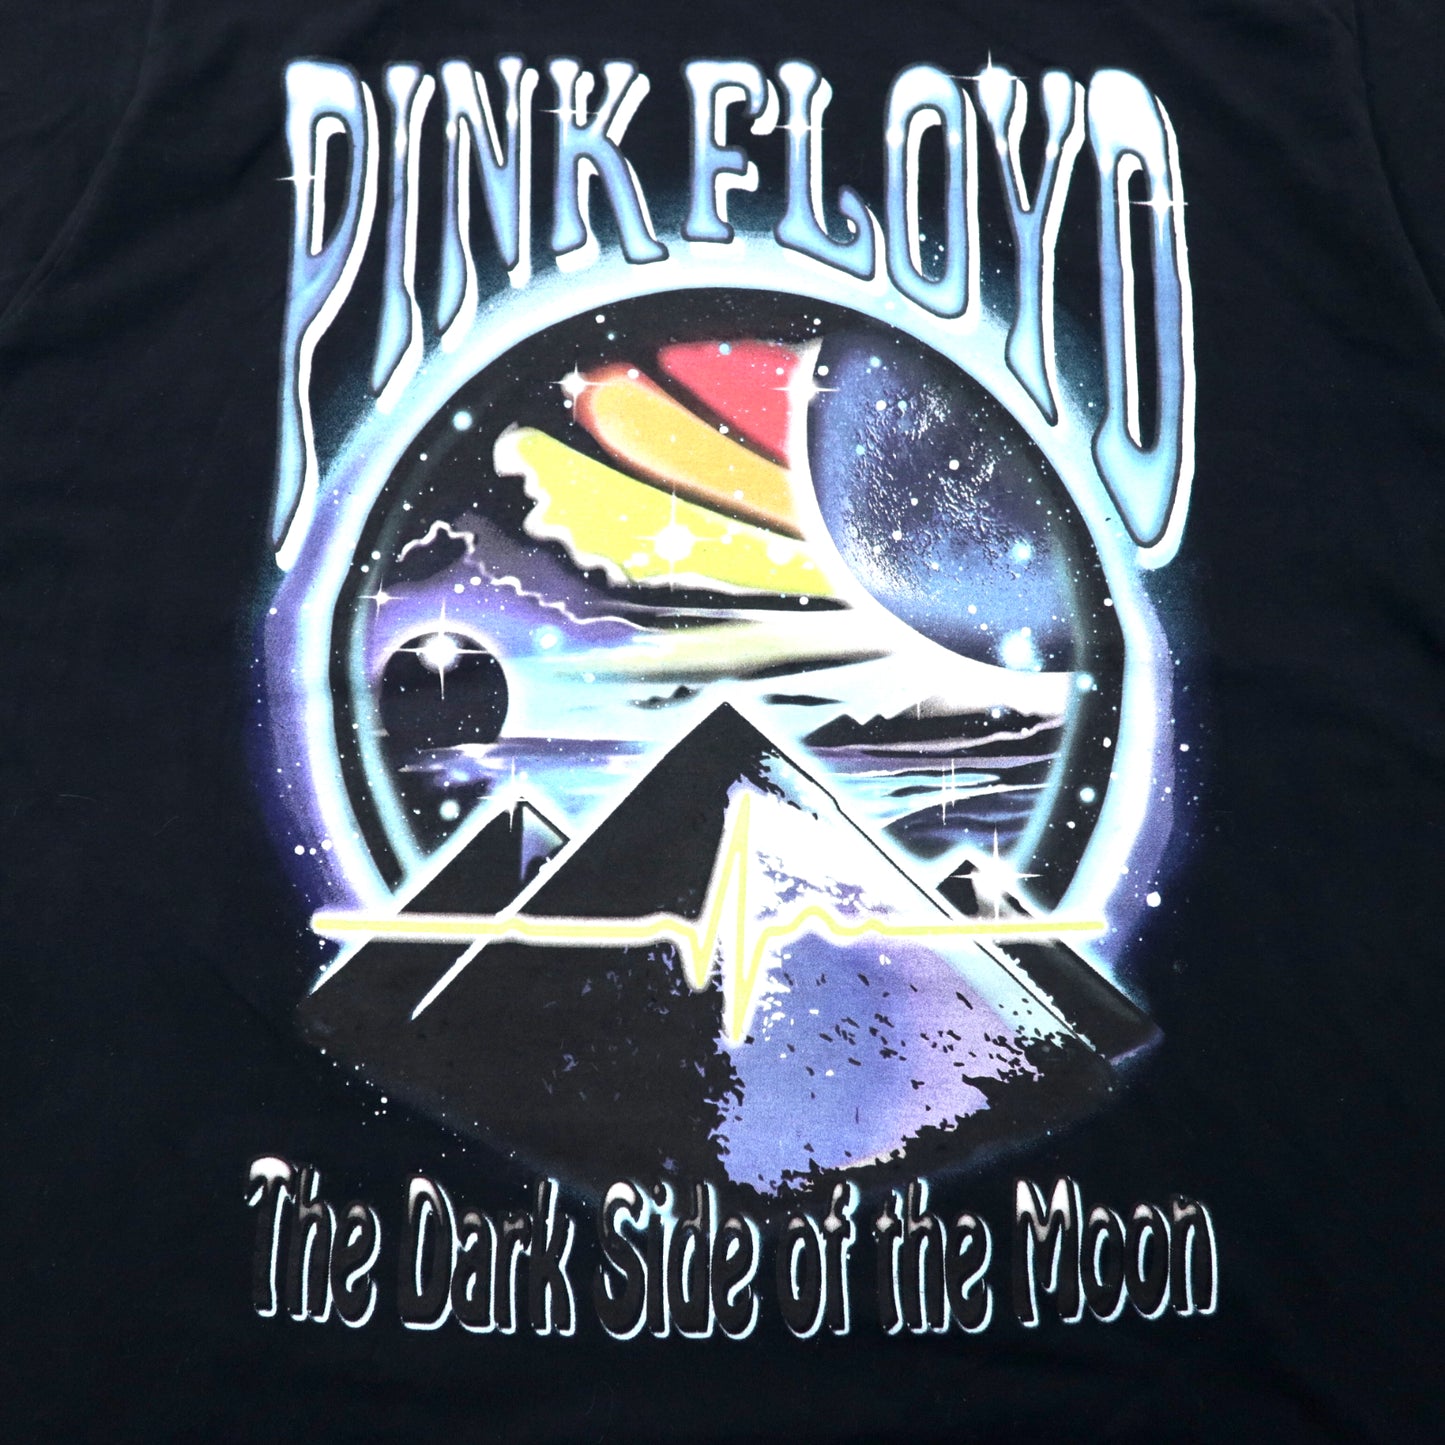 PINK FLOYD ピンクフロイド バンドTシャツ 2XL ブラック コットン The Dark Side Of The Moon ビッグサイズ